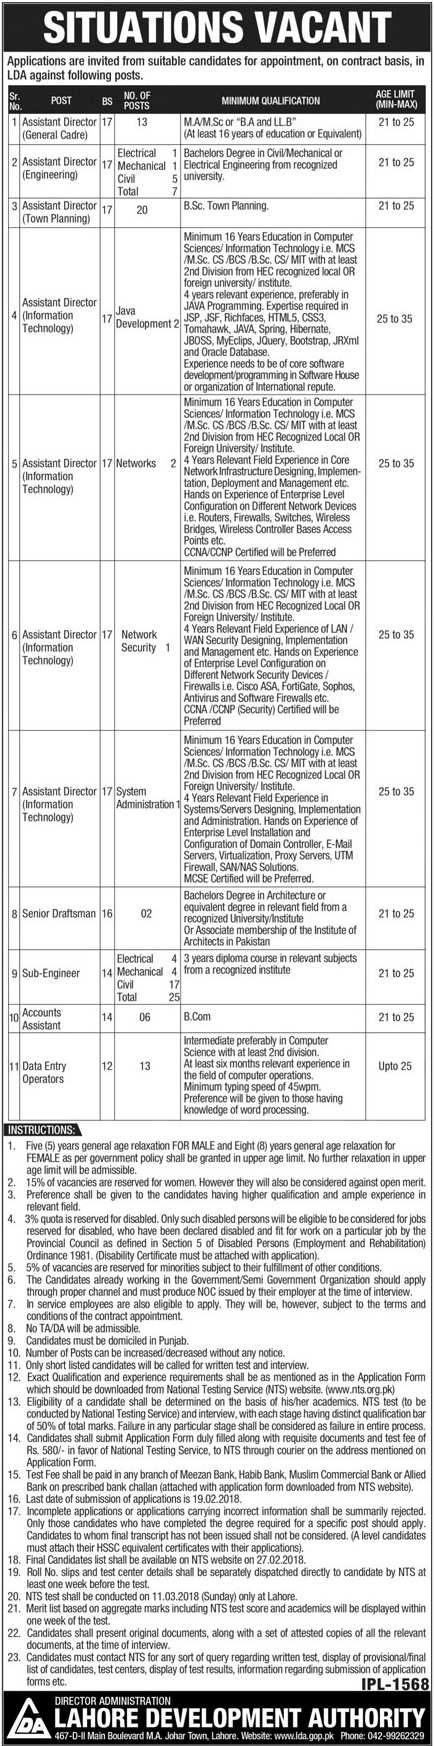 Jobs in Lahore Development Authority LDA 04 Feb 2018